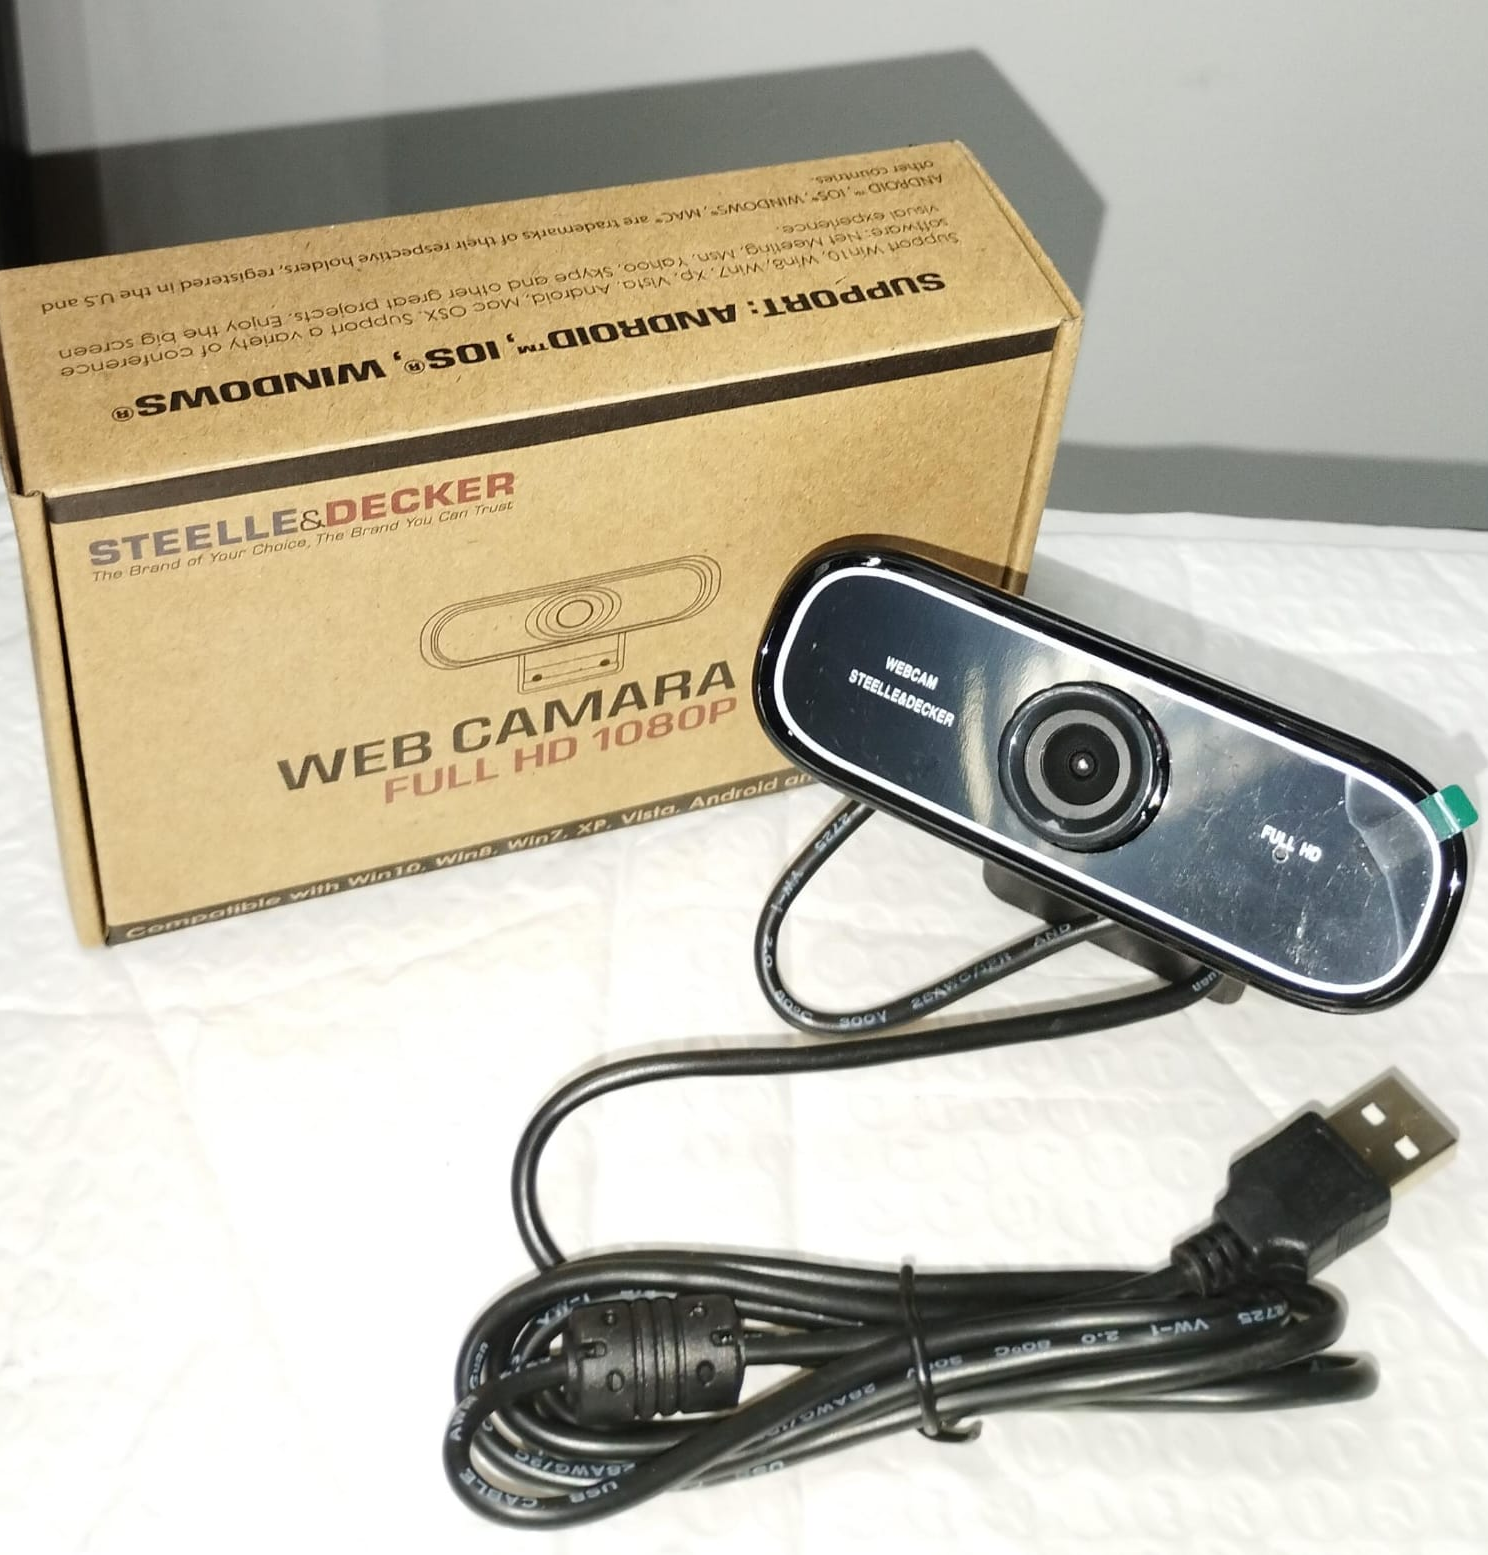 Web Camara HD Full HD 1080P